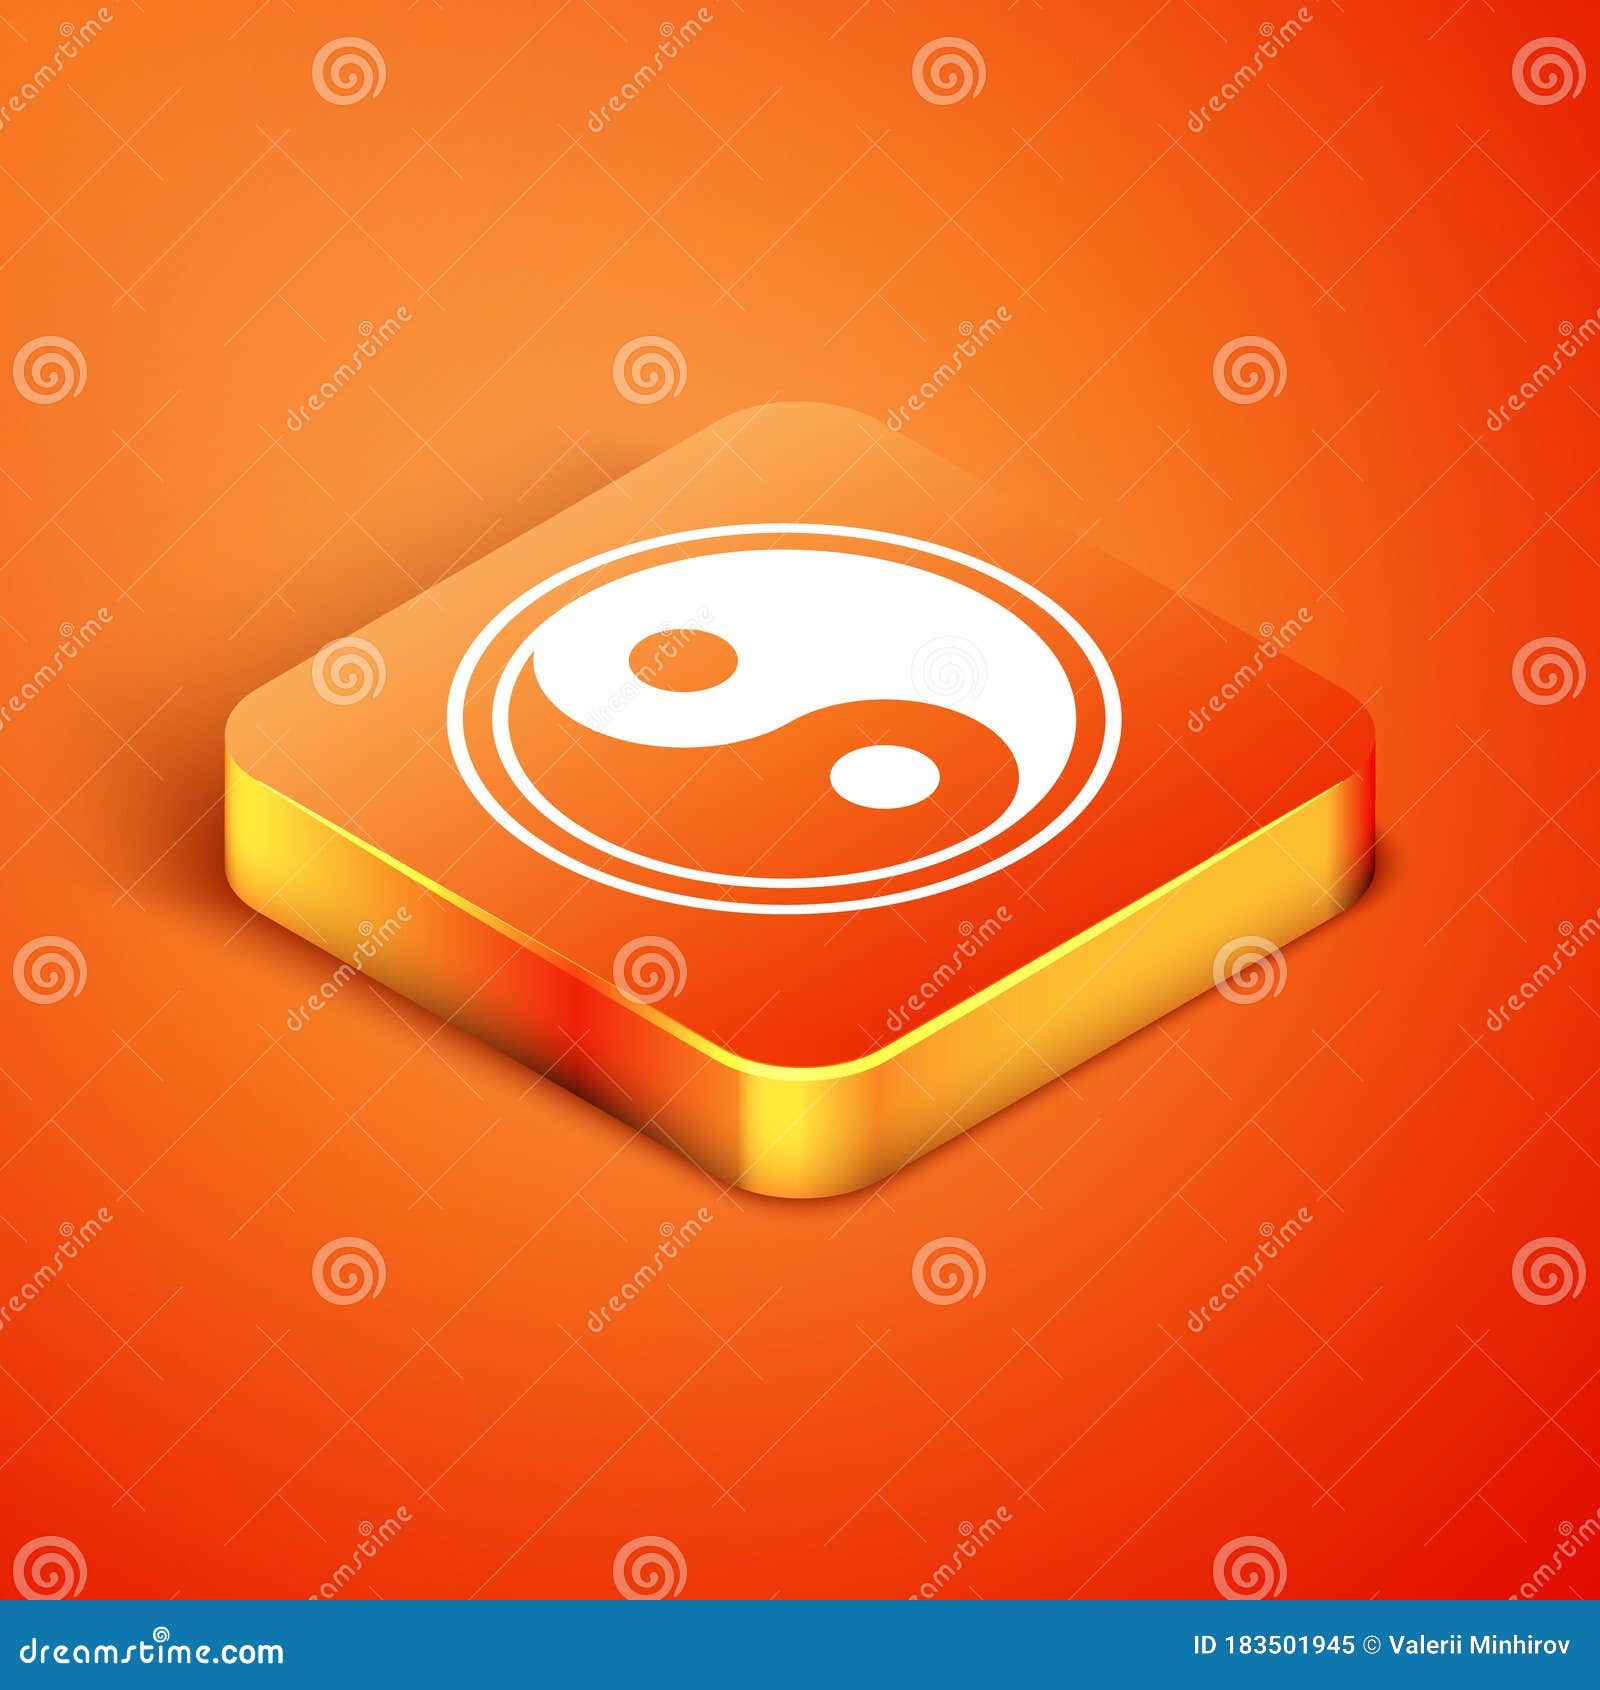 Isometric Yin Yang symbol of harmony and balance icon isolated on orange background. Vector Illustration